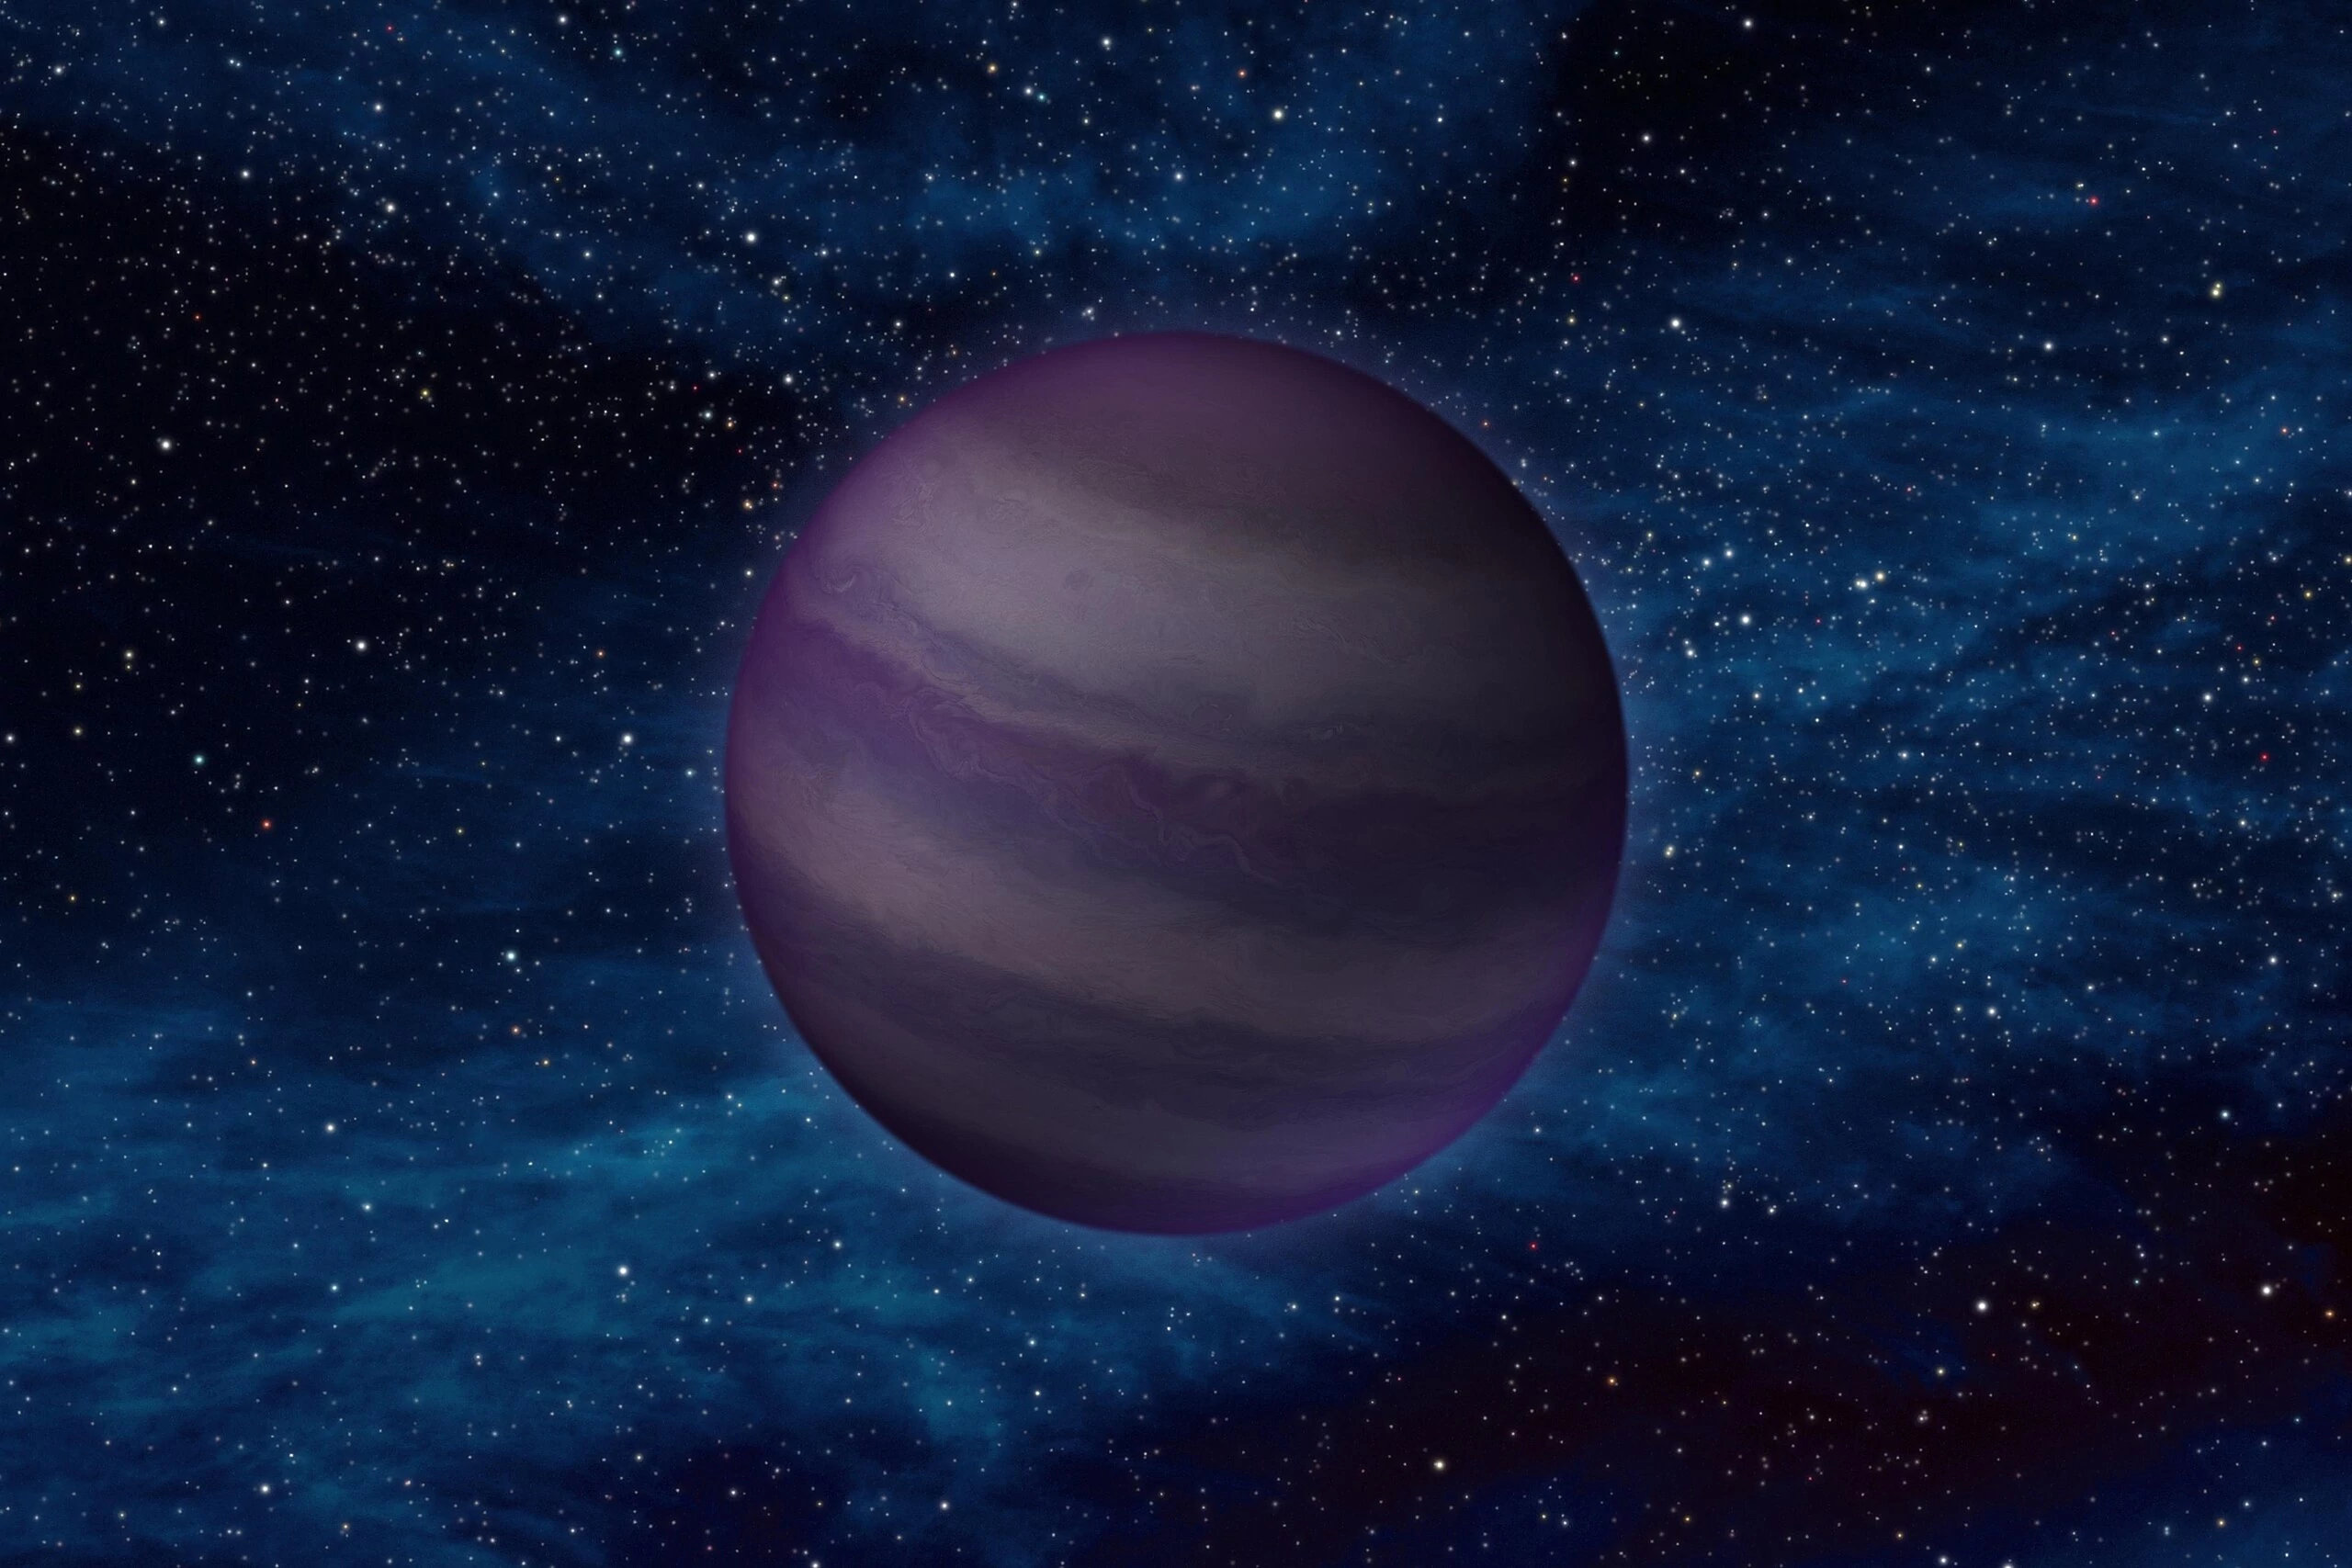 Brązowy karzeł (Brown Dwarf) typu Y – WISE 1828+2650 – wizja artystyczna